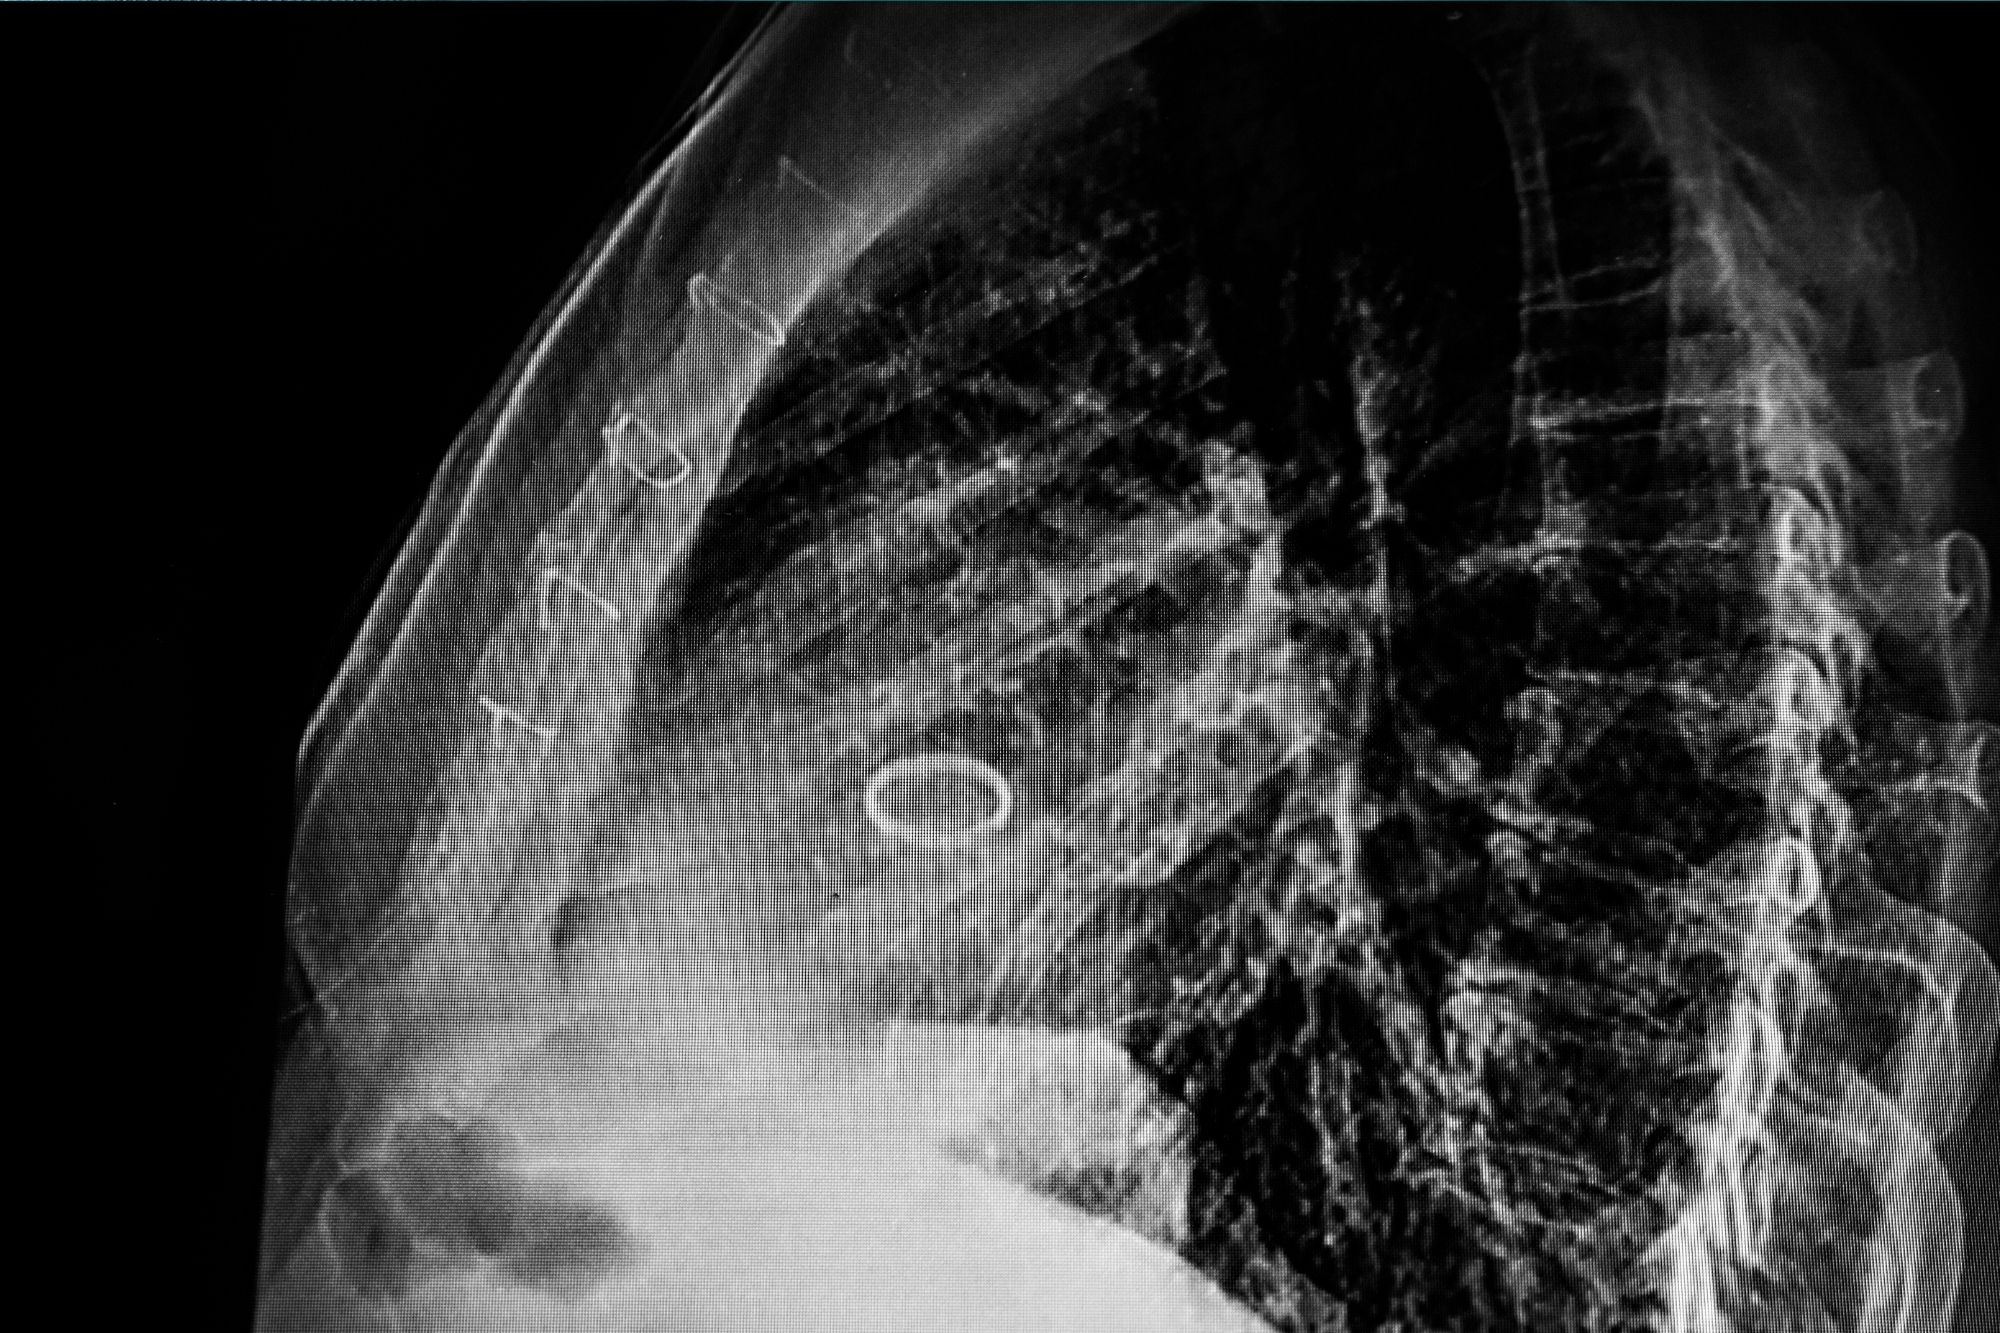 Remplacement de la valve aortique par voie transcathtrale en turquie